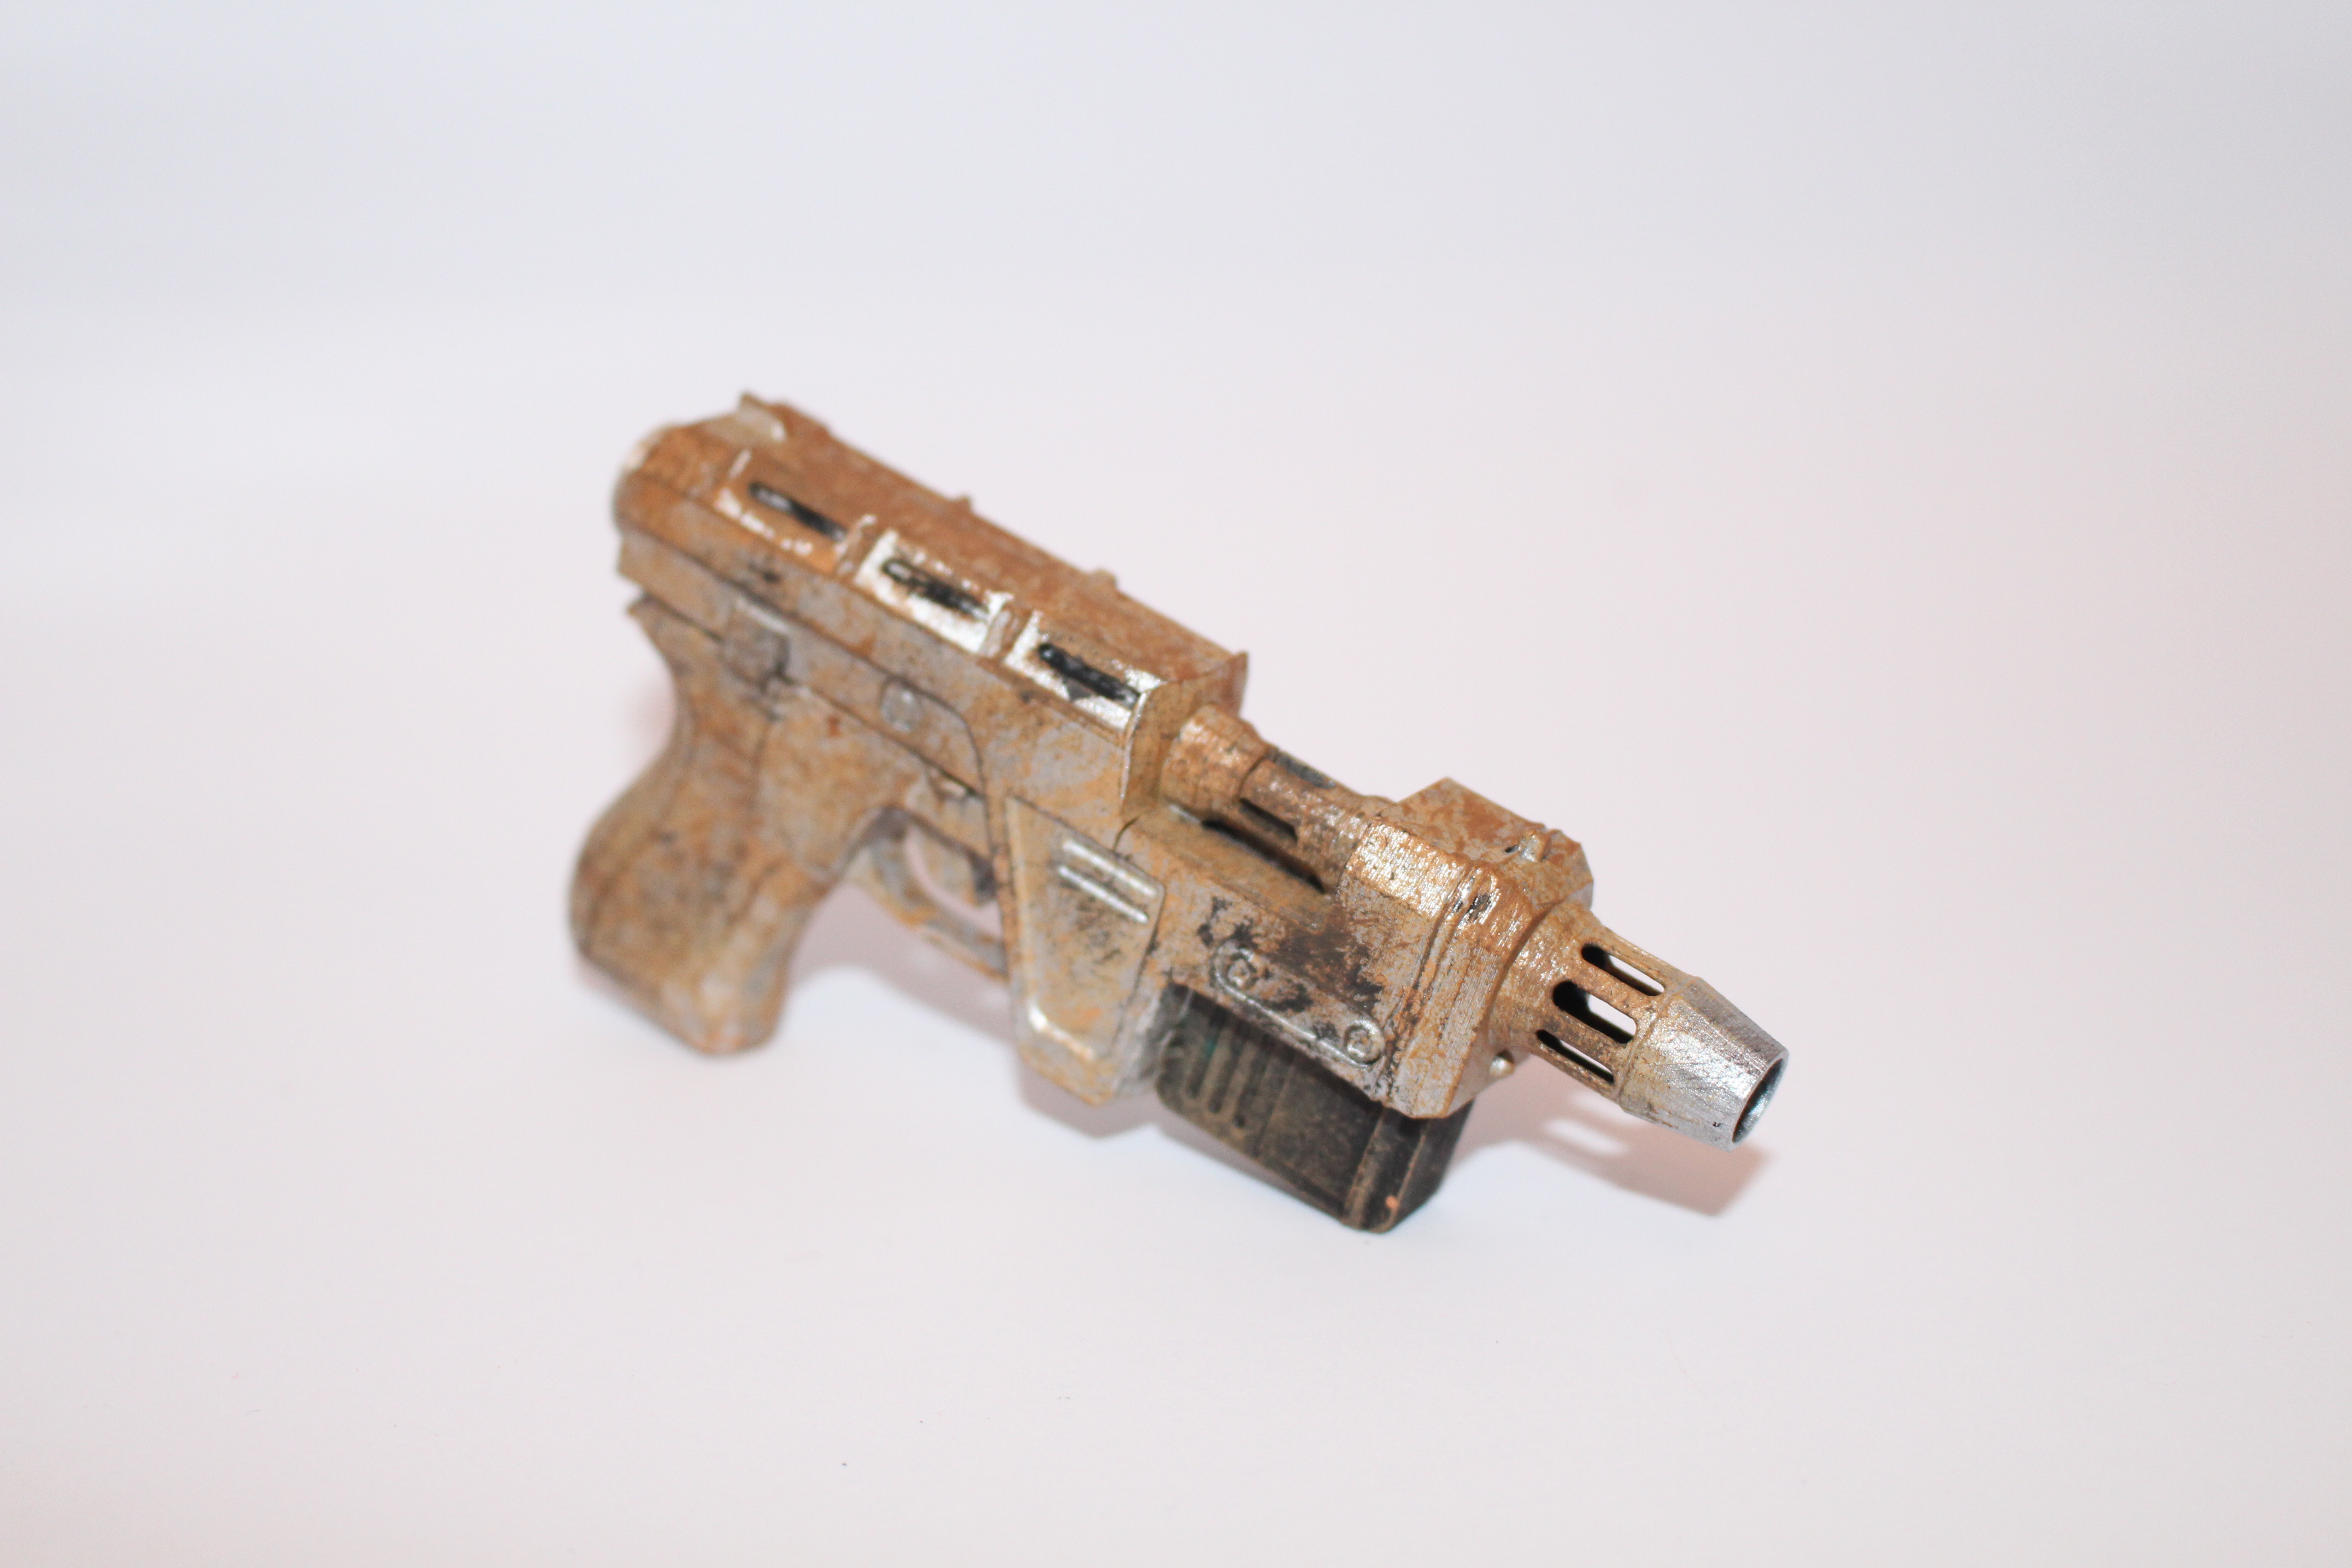 Glie-44 blaster pistol from Starwars and Battlefront 2